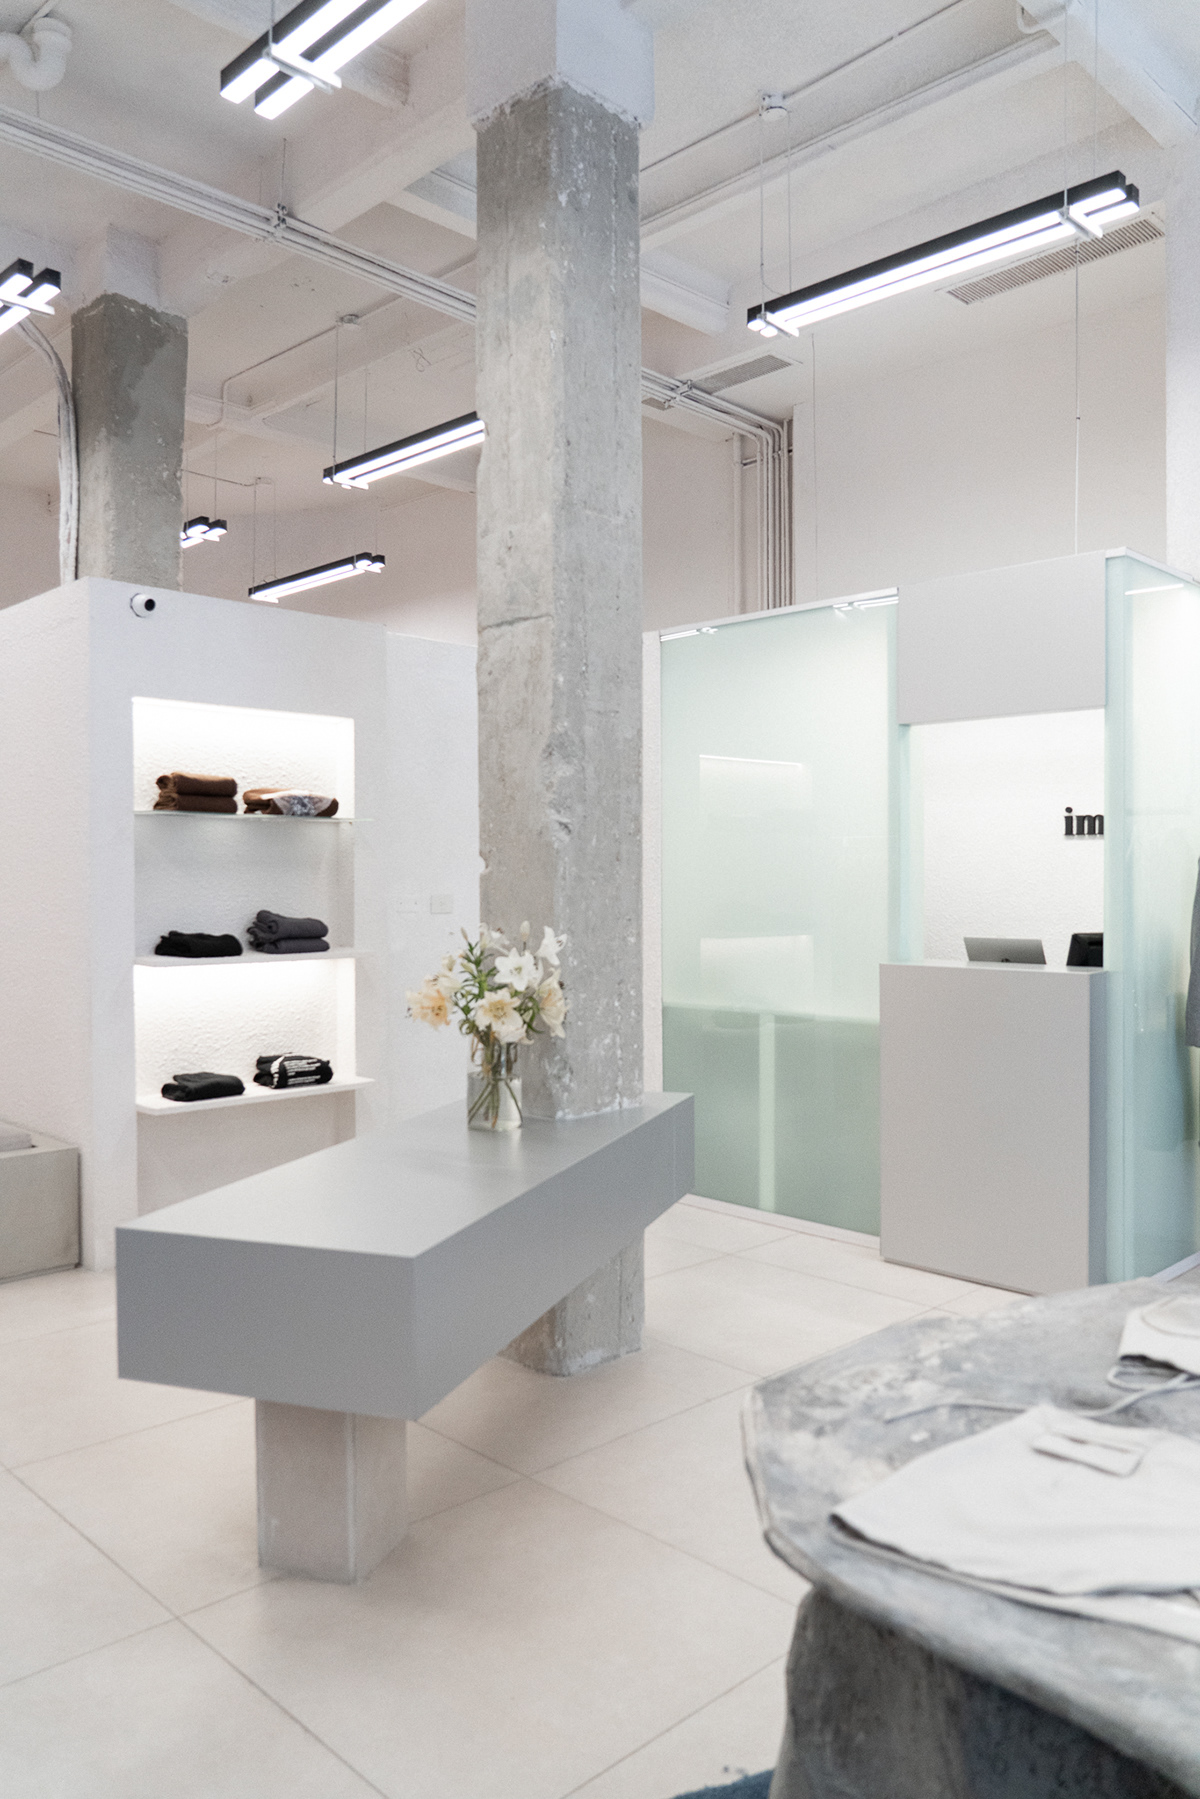 Interiorismo arquitectura Retail iman design design interior local de ropa